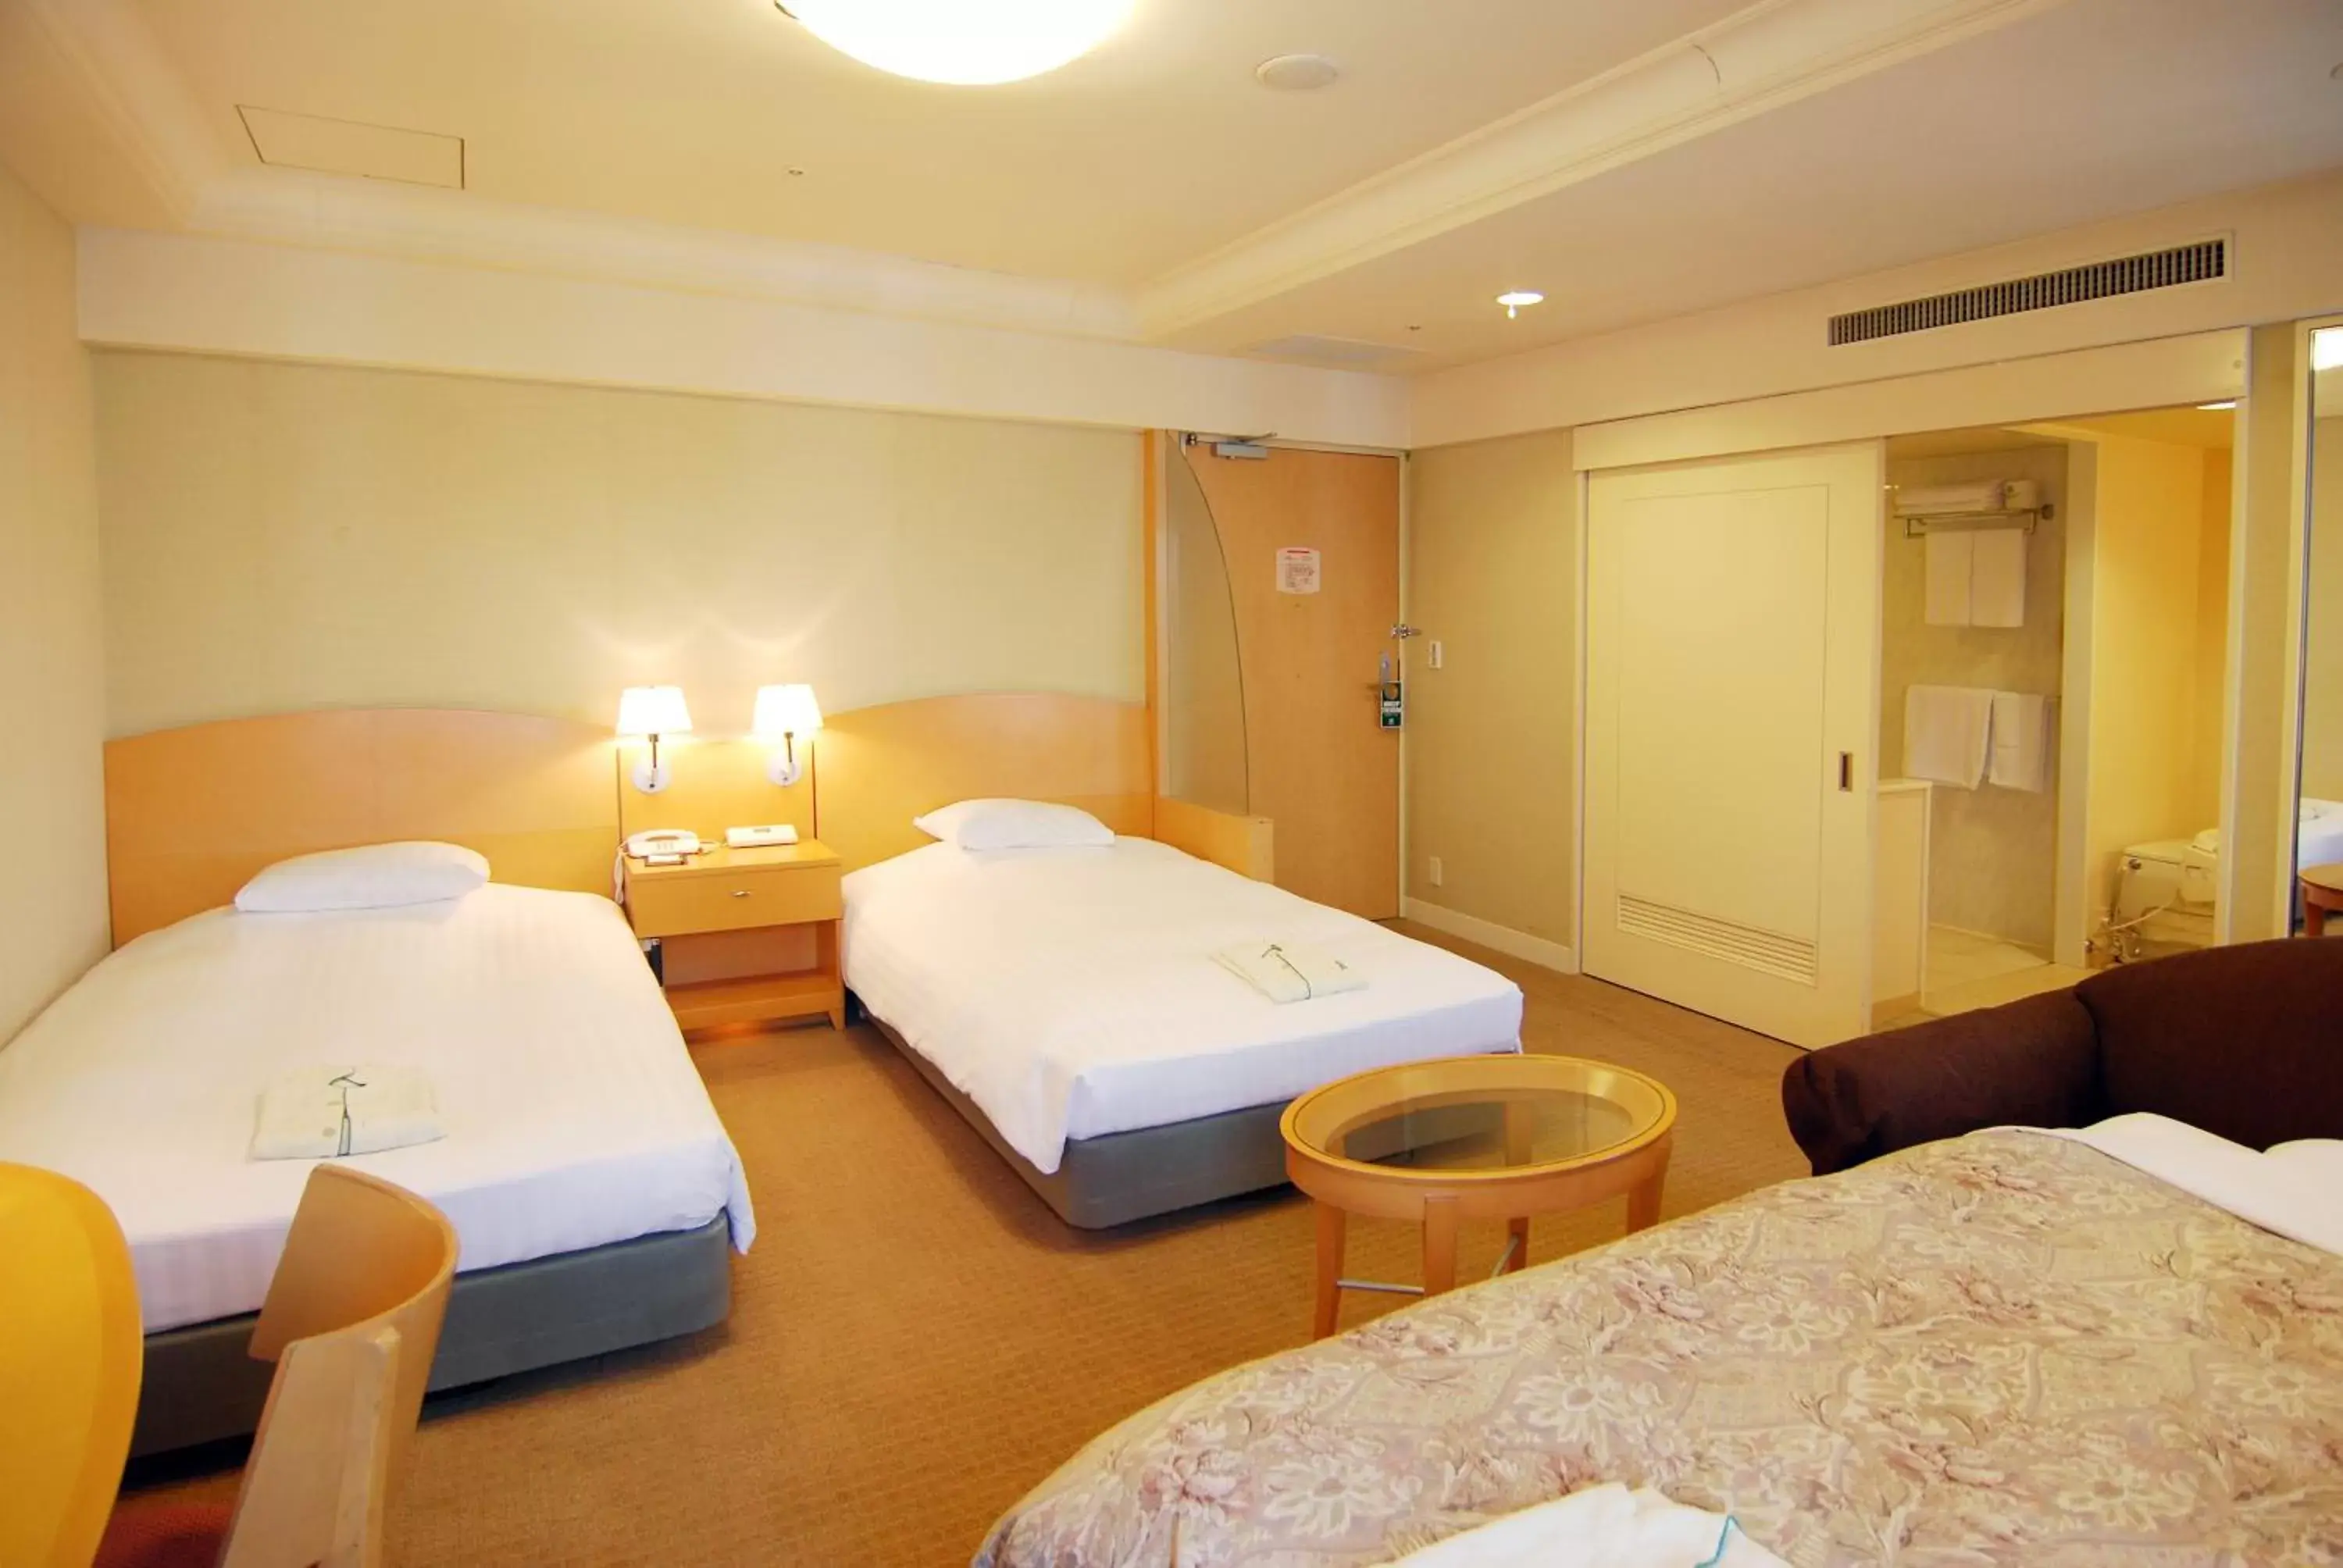 Day, Bed in Rihga Hotel Zest Takamatsu